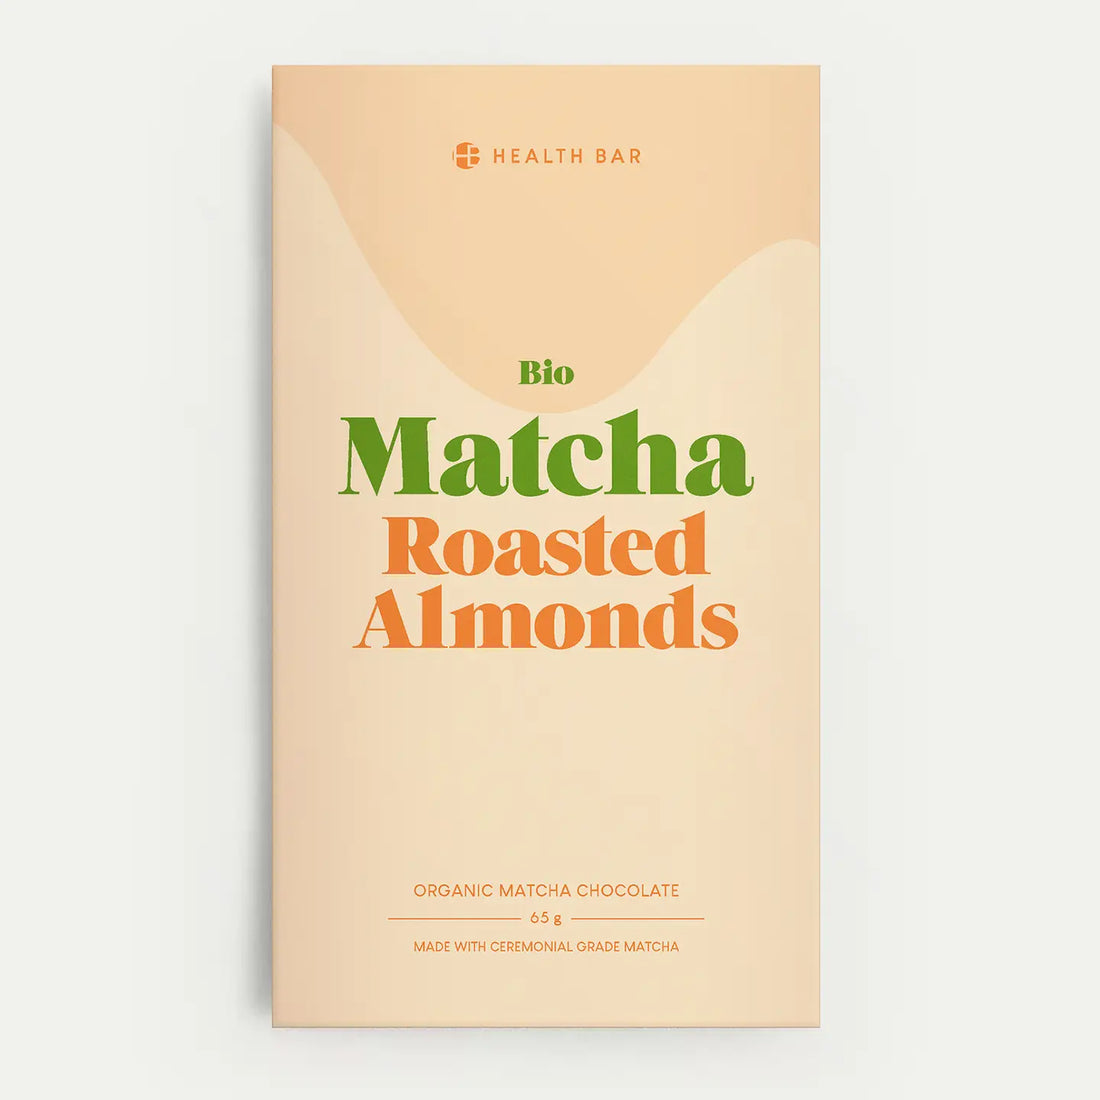 Organic Matcha Chocolate Roasted Almonds